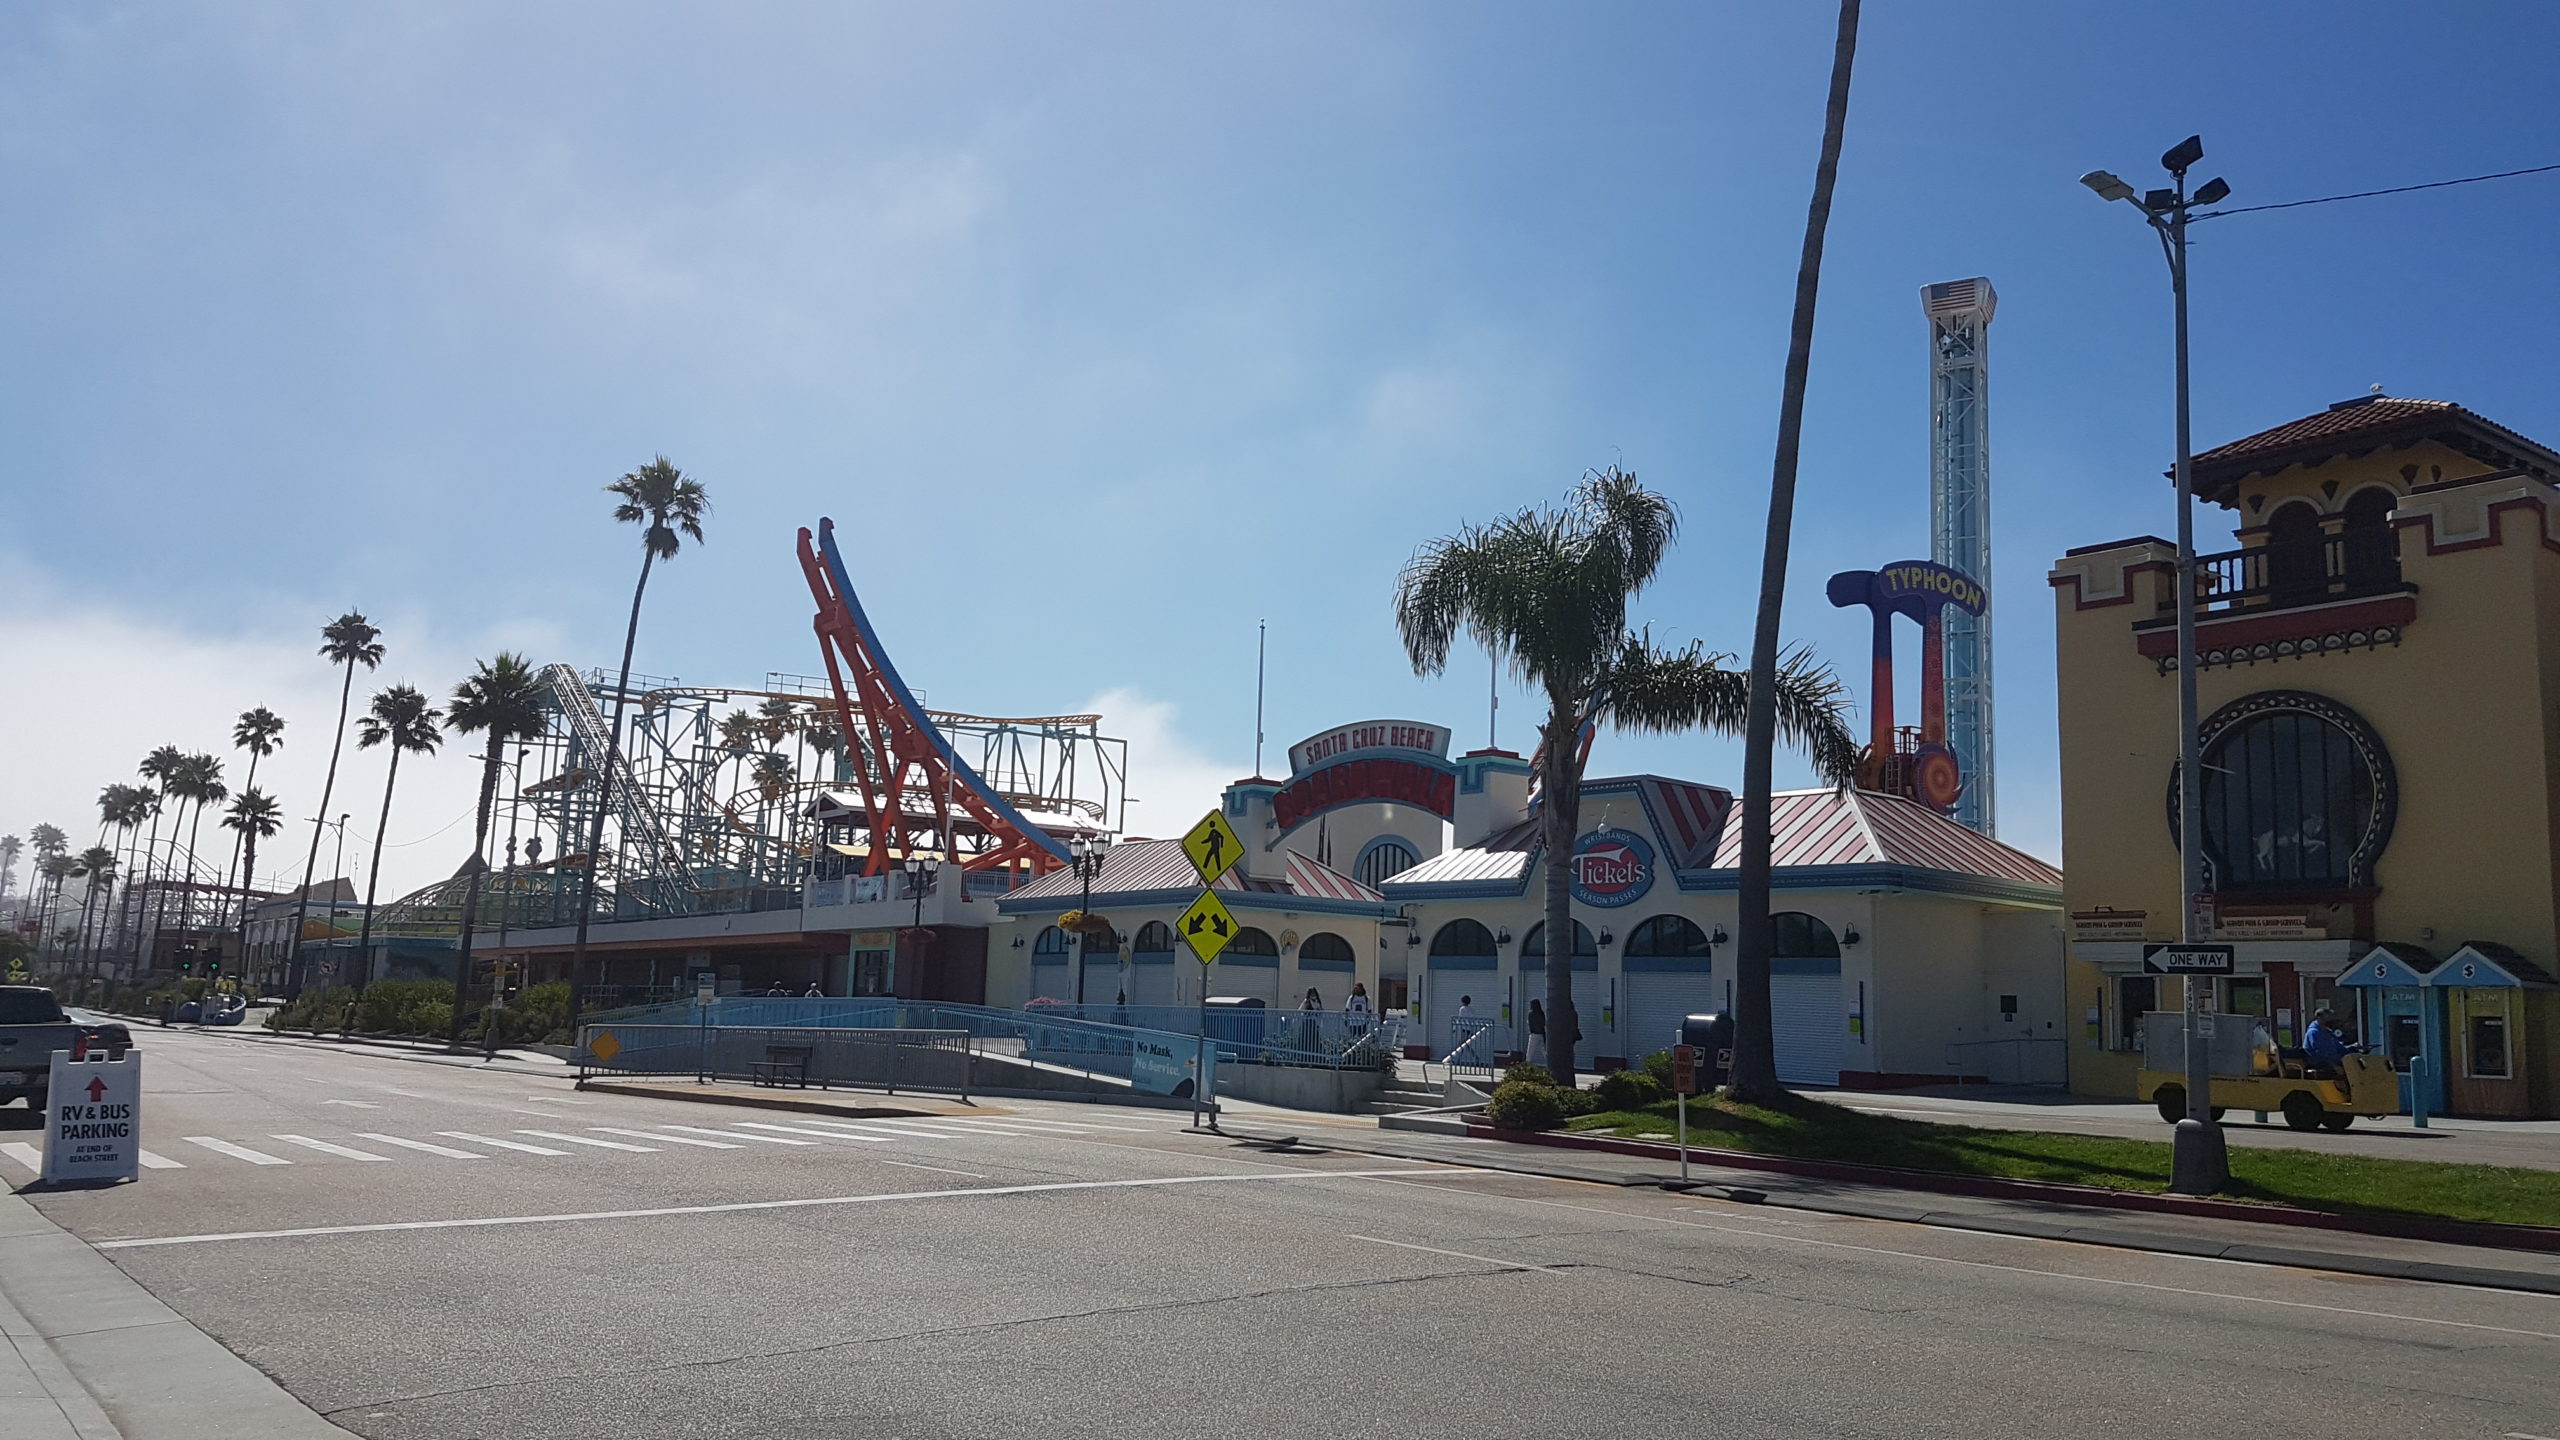 Le parc d'attraction de Santa Cruz, juste à côté de la plage.